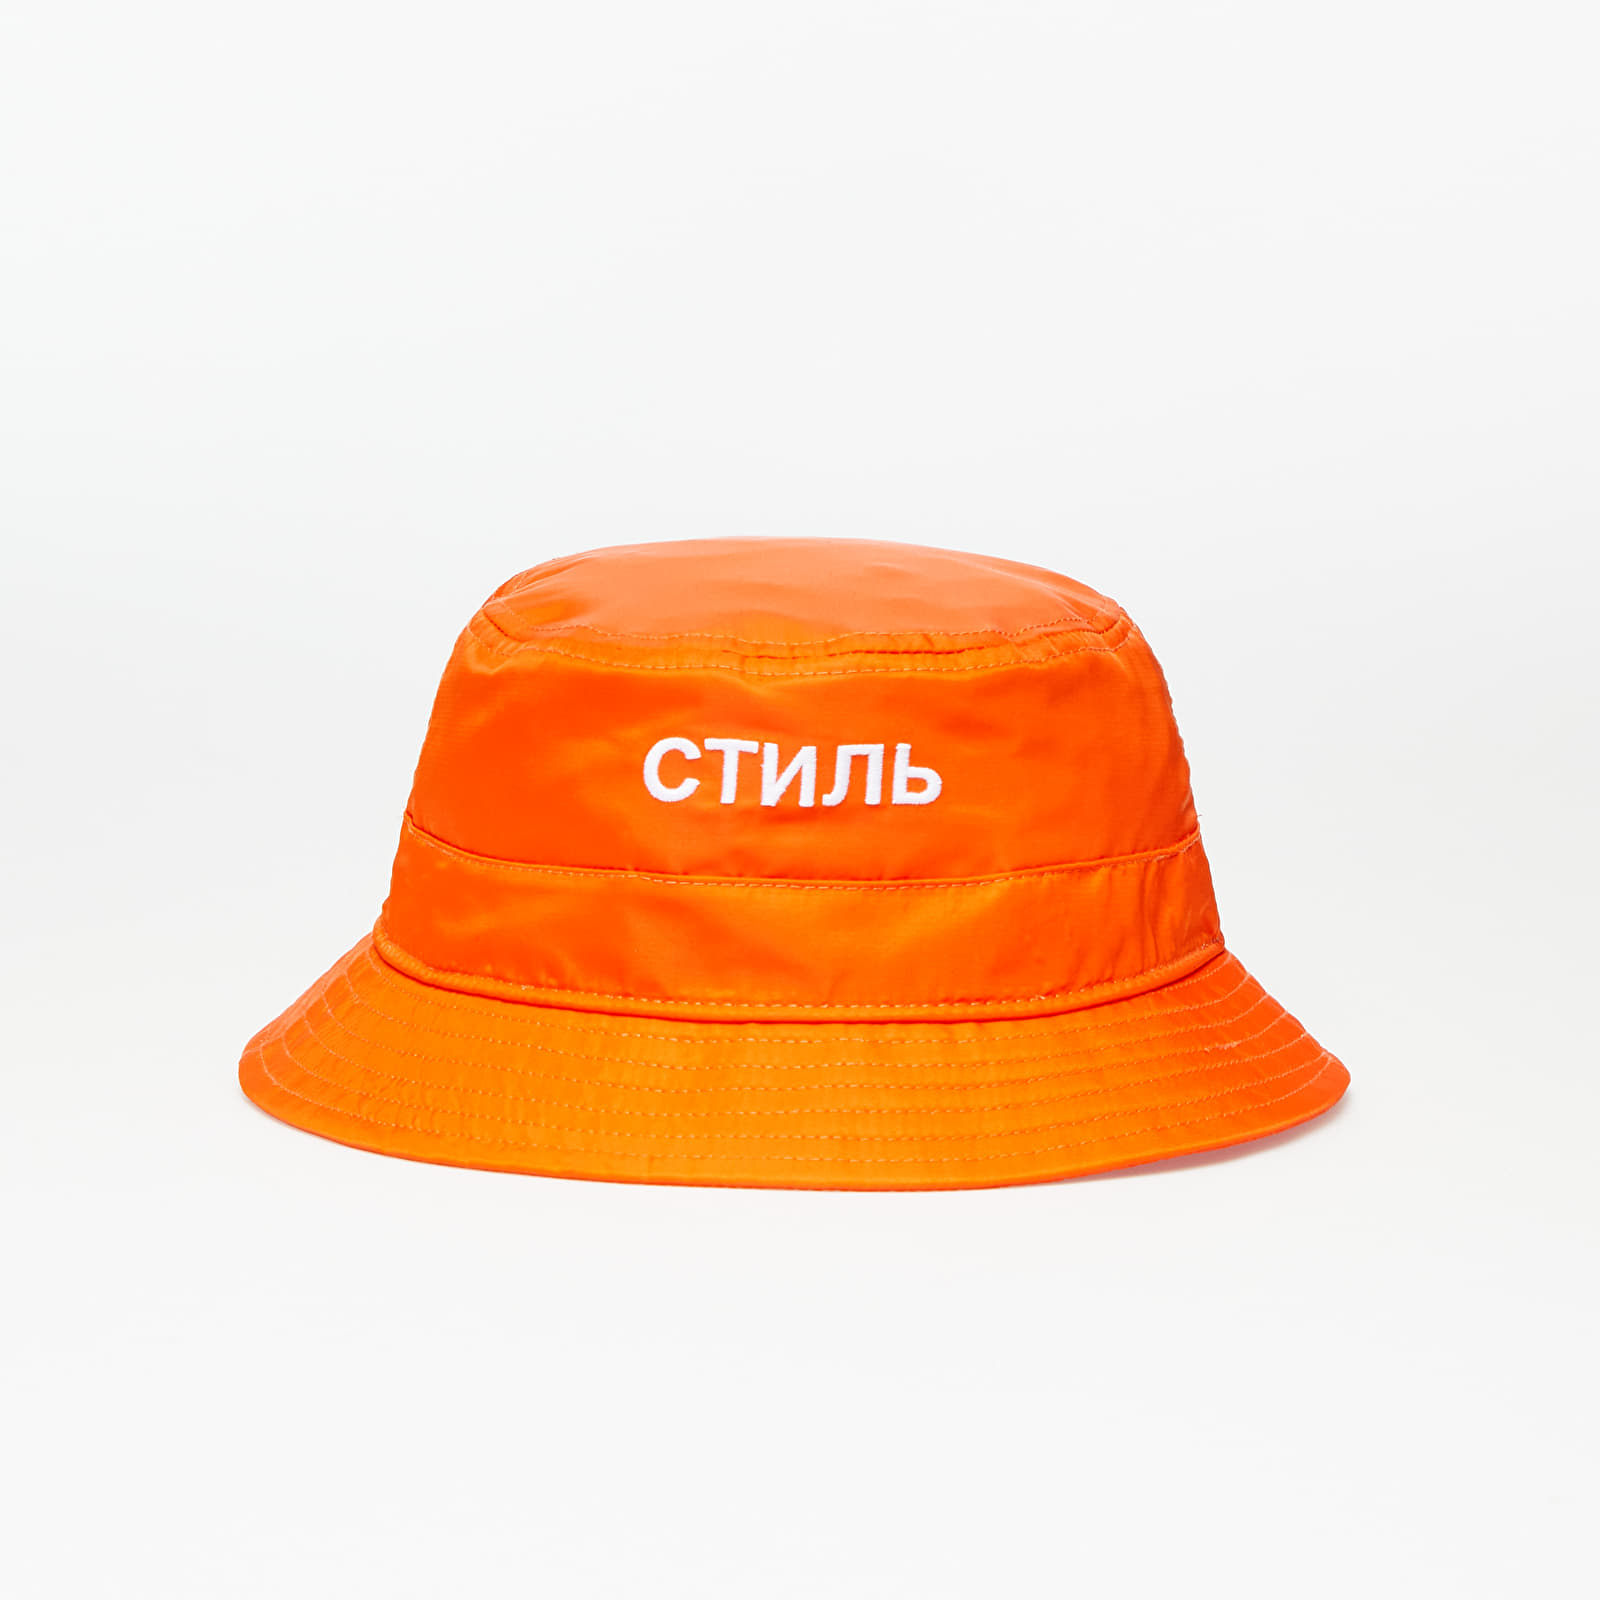 Бъкет шапки HERON PRESTON Ctnmb Bucket Hat Orange/ White 1247044